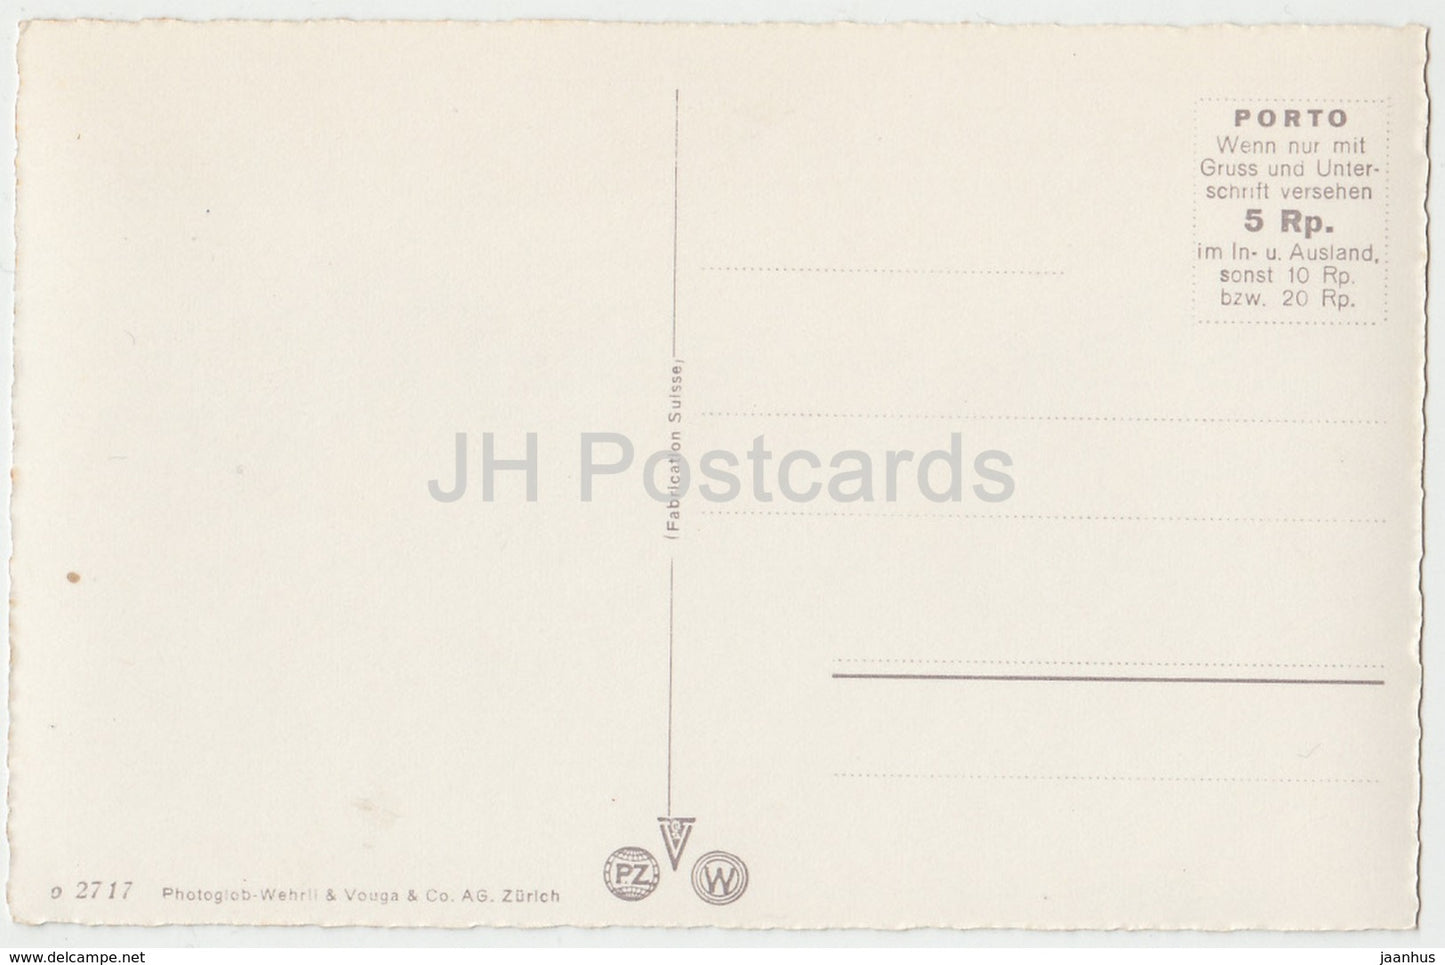 Oberalpsee 2028 m mit Hotel - Schweiz - alte Postkarte - unbenutzt